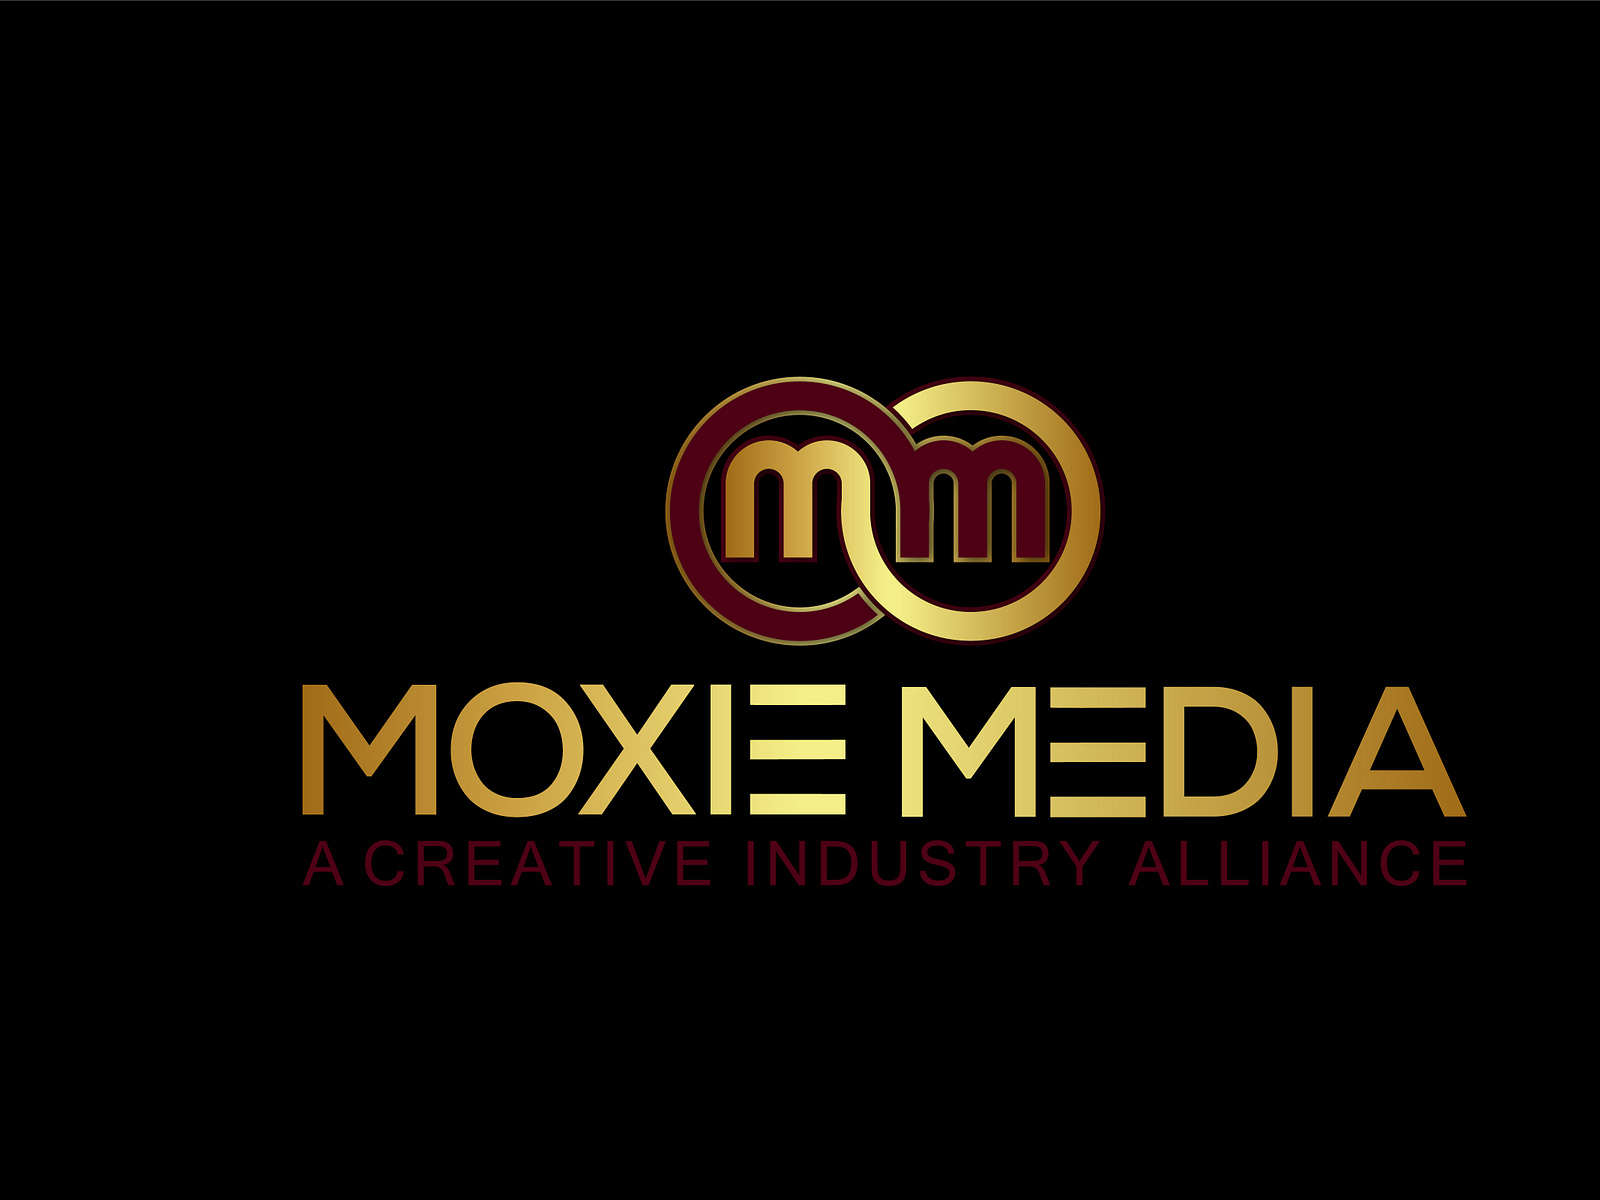 Moxie Media Logo by sahin miah on Dribbble